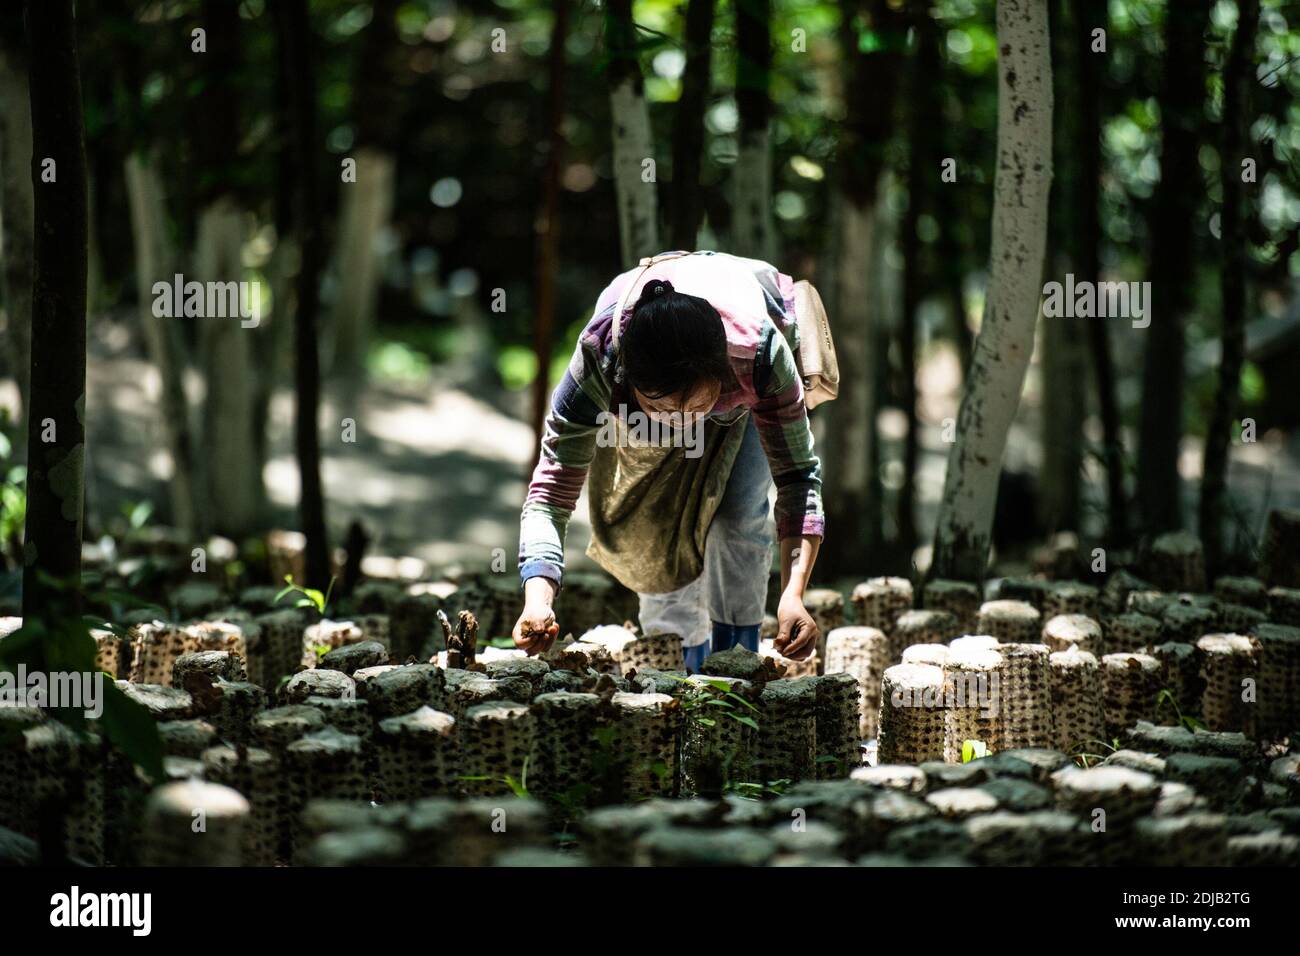 (201214) -- PEKING, 14. Dezember 2020 (Xinhua) -- EIN Landwirt pflückt essbare Baumpilze im Dorf Lashui im Bezirk Congjiang, südwestlich von Chinas Provinz Guizhou, 18. Mai 2020. China hat alle seine 832 verarmten Landkreise landesweit von der Armutsliste entfernt. Die Entwicklungsländer haben eine wichtige Rolle bei den Bemühungen des Landes zur Armutsbekämpfung gespielt, die nach wie vor von grundlegender Bedeutung sein werden, um die Erfolge bei der Armutsbekämpfung kontinuierlich zu konsolidieren. Statistiken des chinesischen Ministeriums für Landwirtschaft und ländliche Angelegenheiten zeigen, dass alle 832 verarmten Landkreise mehr als eine Million ind durchgeführt haben Stockfoto